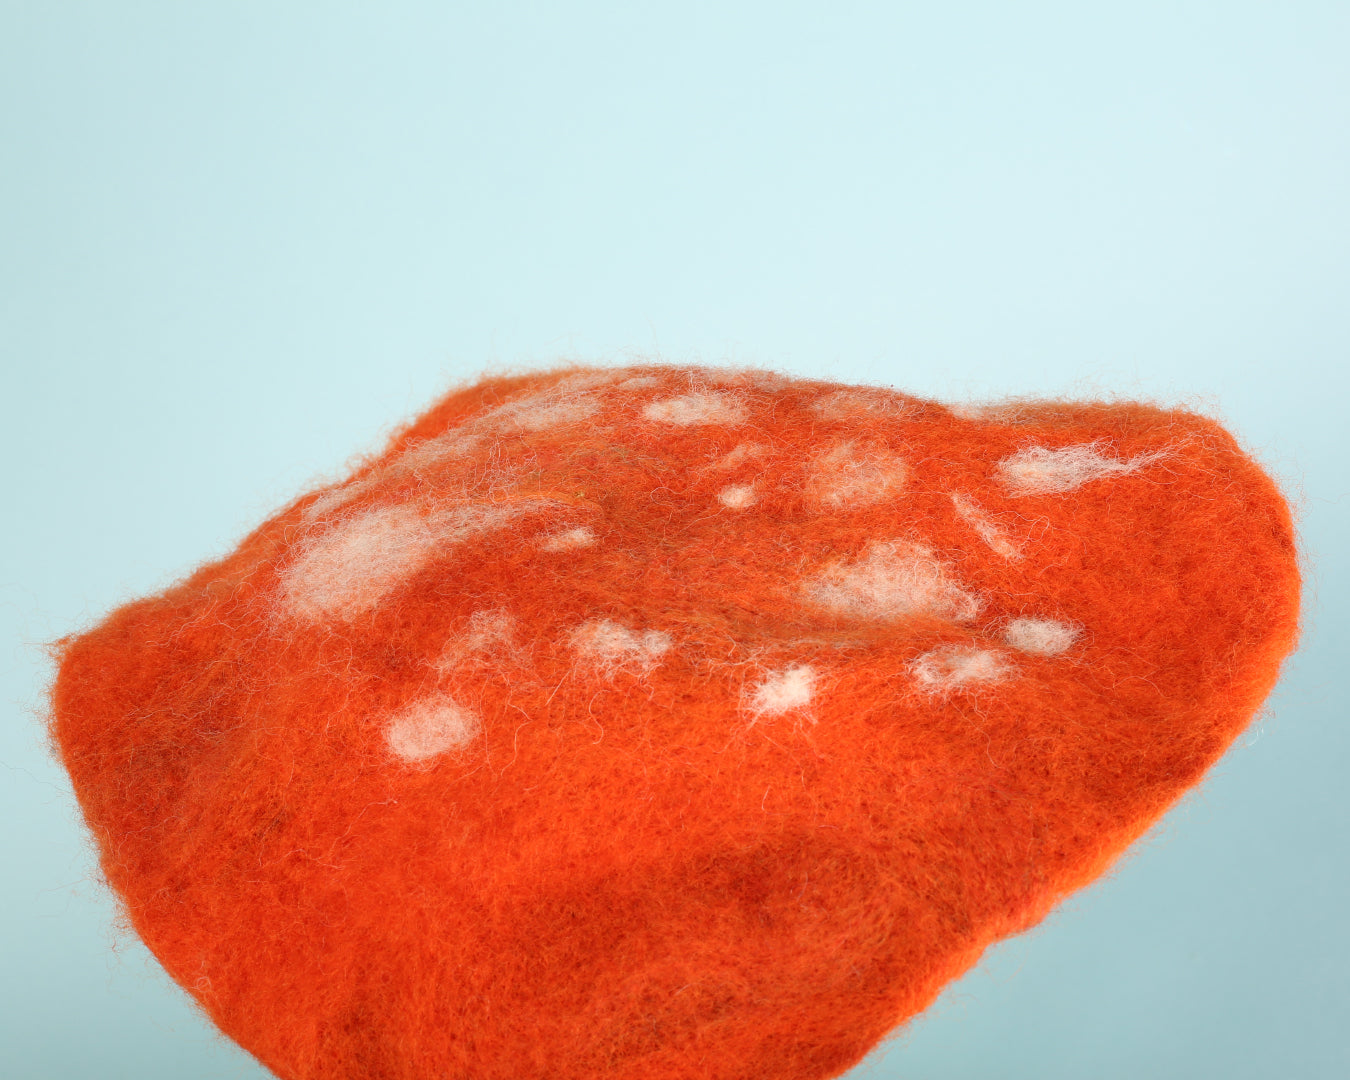 Cat Rabbit - Orange Cap Mushroom